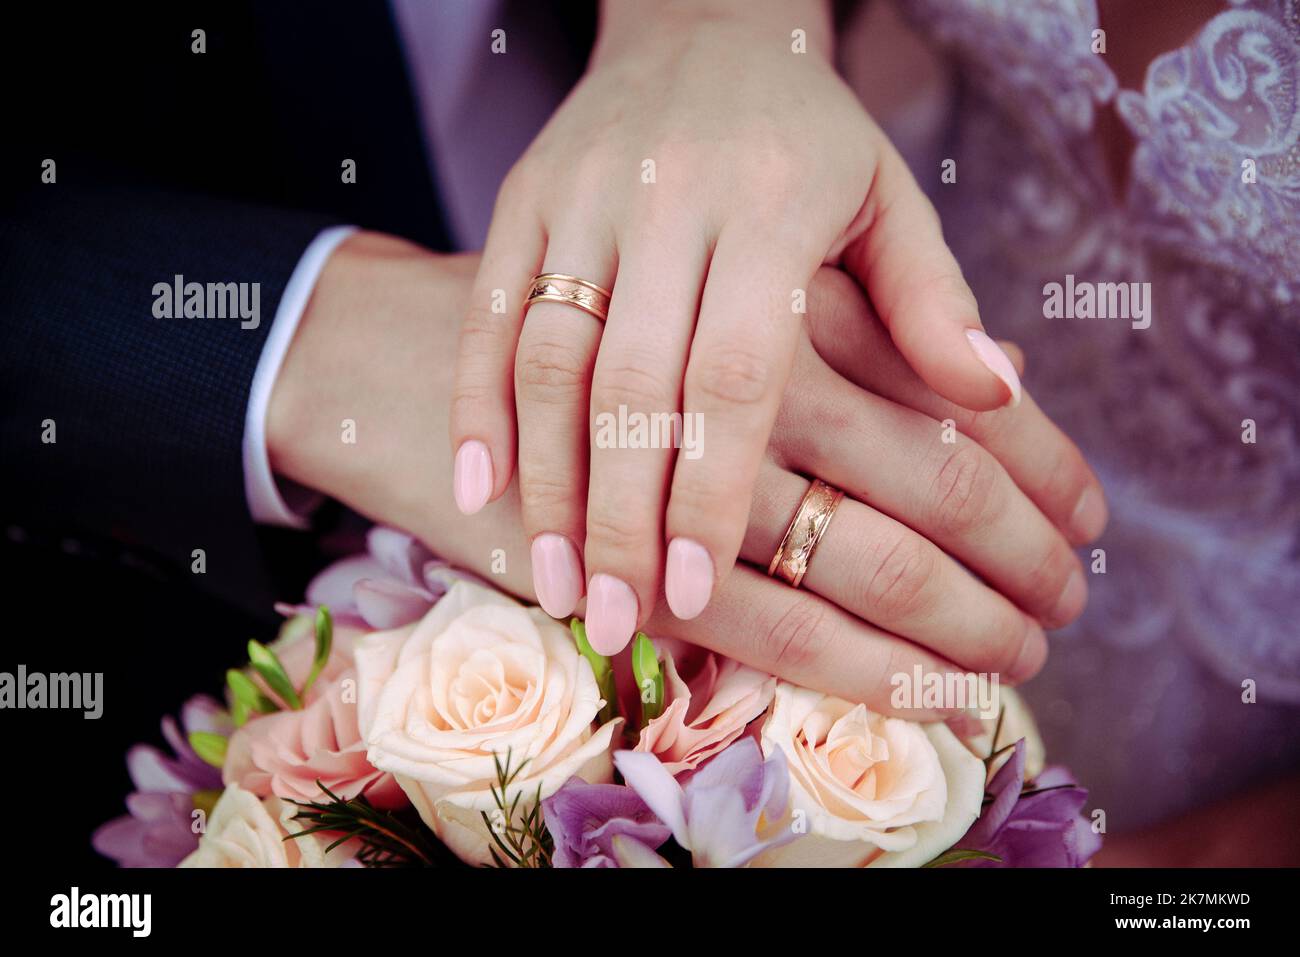 Bild von Mann und Frau mit Ehering.Junges Ehepaar hält Hände, Zeremonie Hochzeitstag. Vermählte die Hände des Paares mit Eheringen. Stockfoto